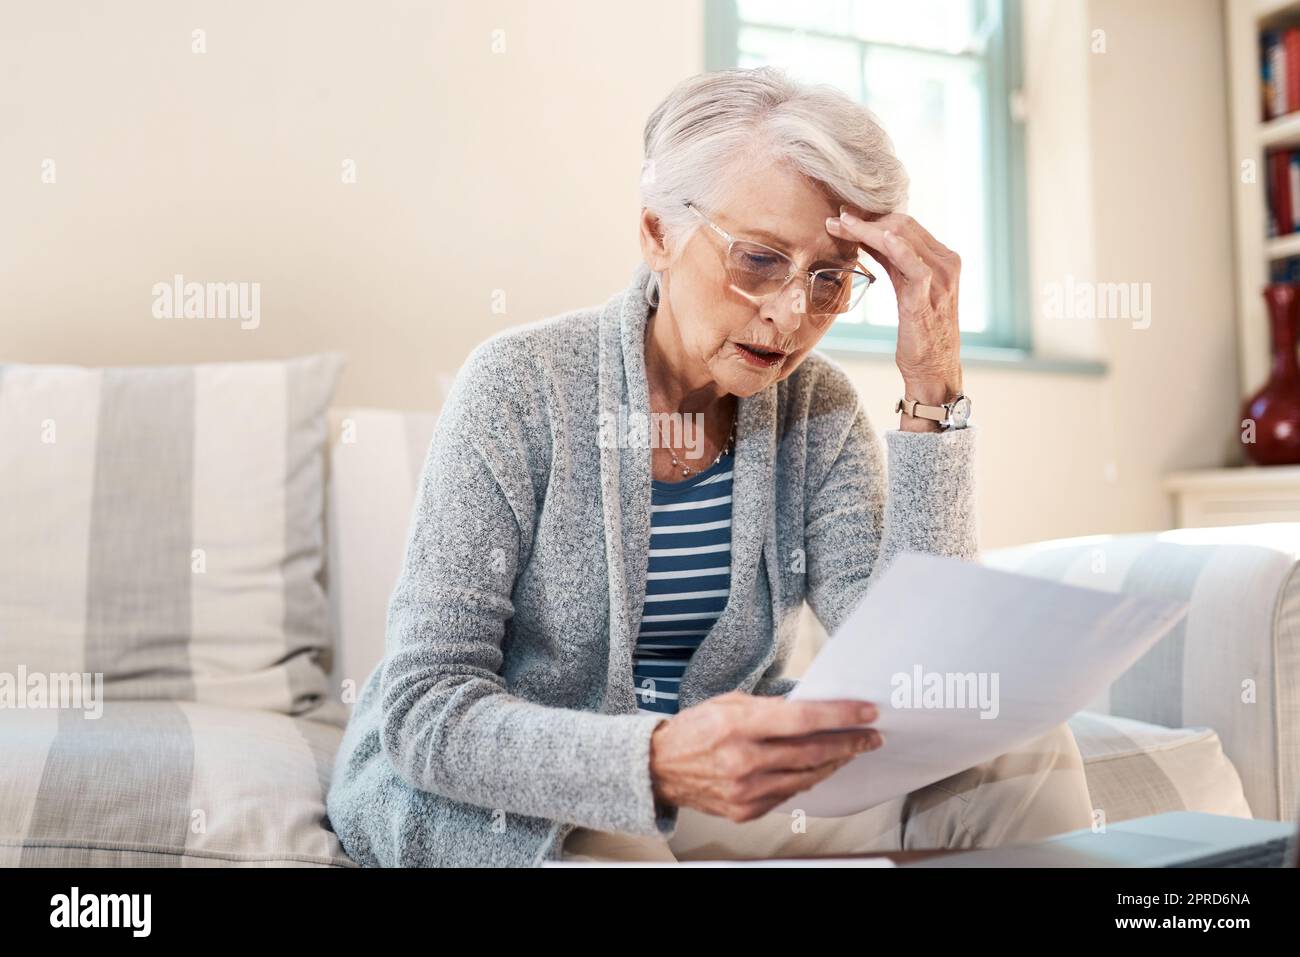 Ich kann mich diese Rückzahlungen nicht mehr leisten. Eine ältere Frau, die gestresst aussieht, während sie zu Hause Papierkram durchläuft. Stockfoto